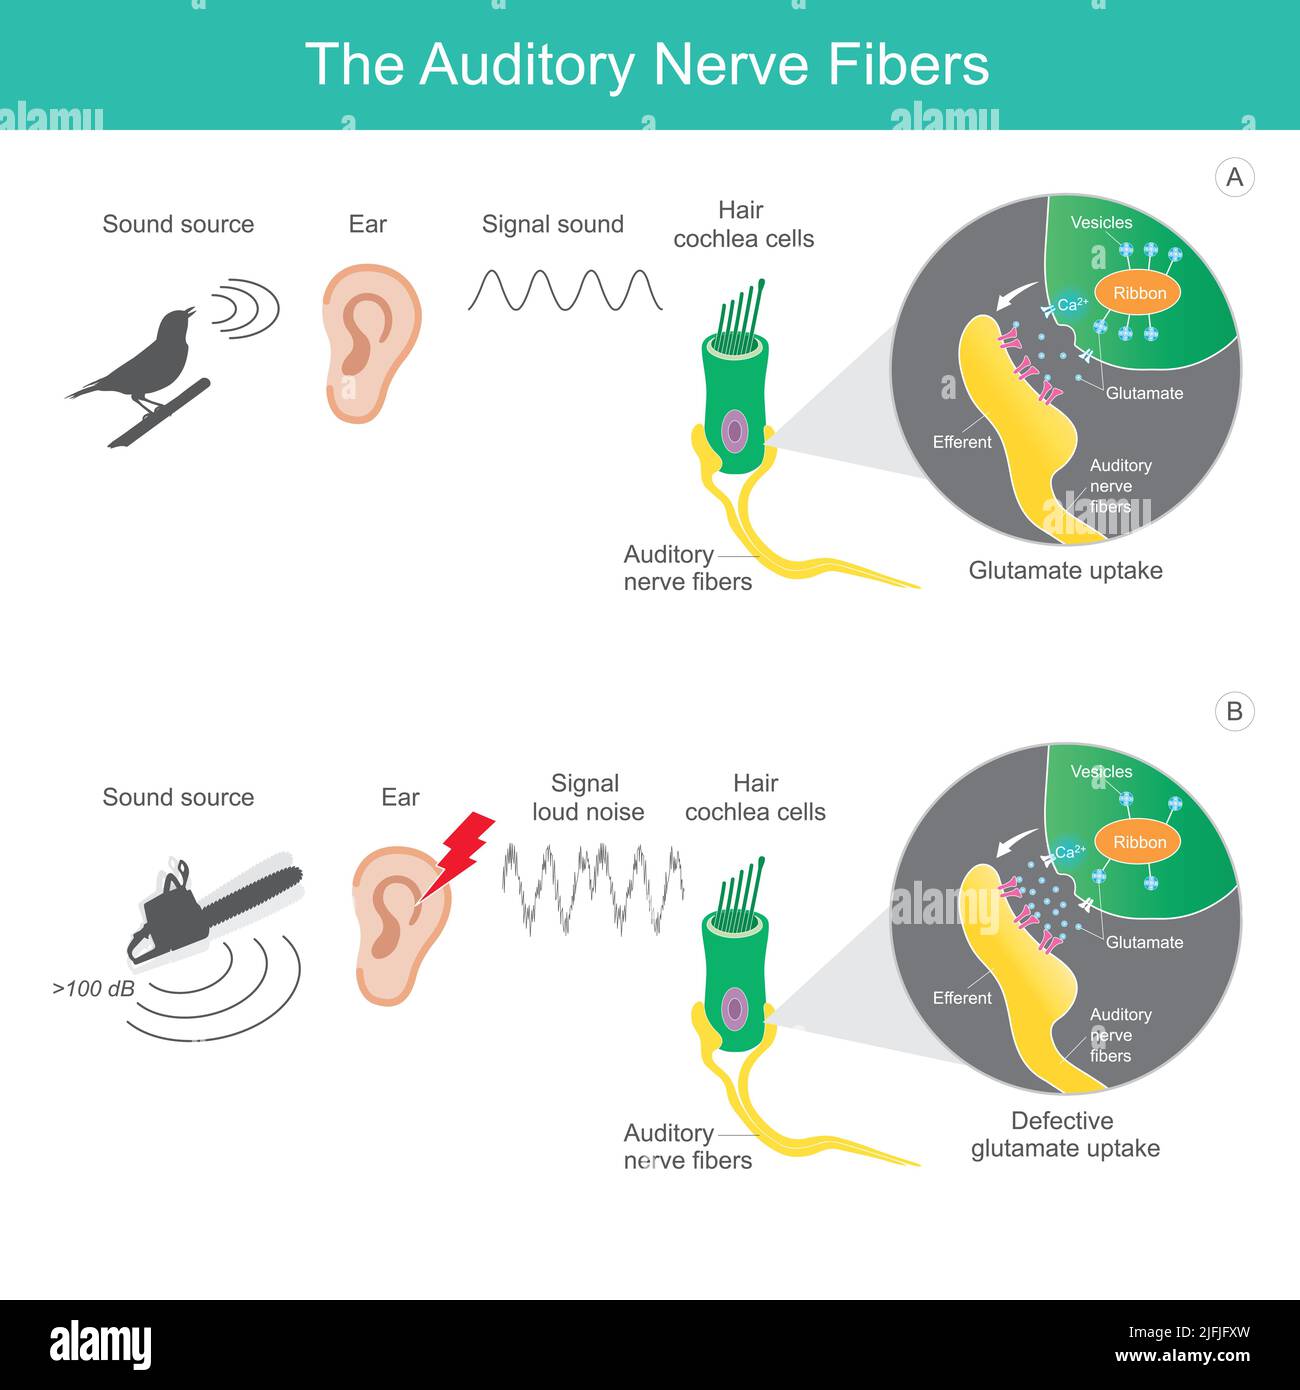 Las fibras del nervio auditivo, la fuente del sonido de la comparación 2 tipos que se envía el sonido de la señal a las fibras del nervio auditivo que afectan el cerebro humano. Ilustración del Vector